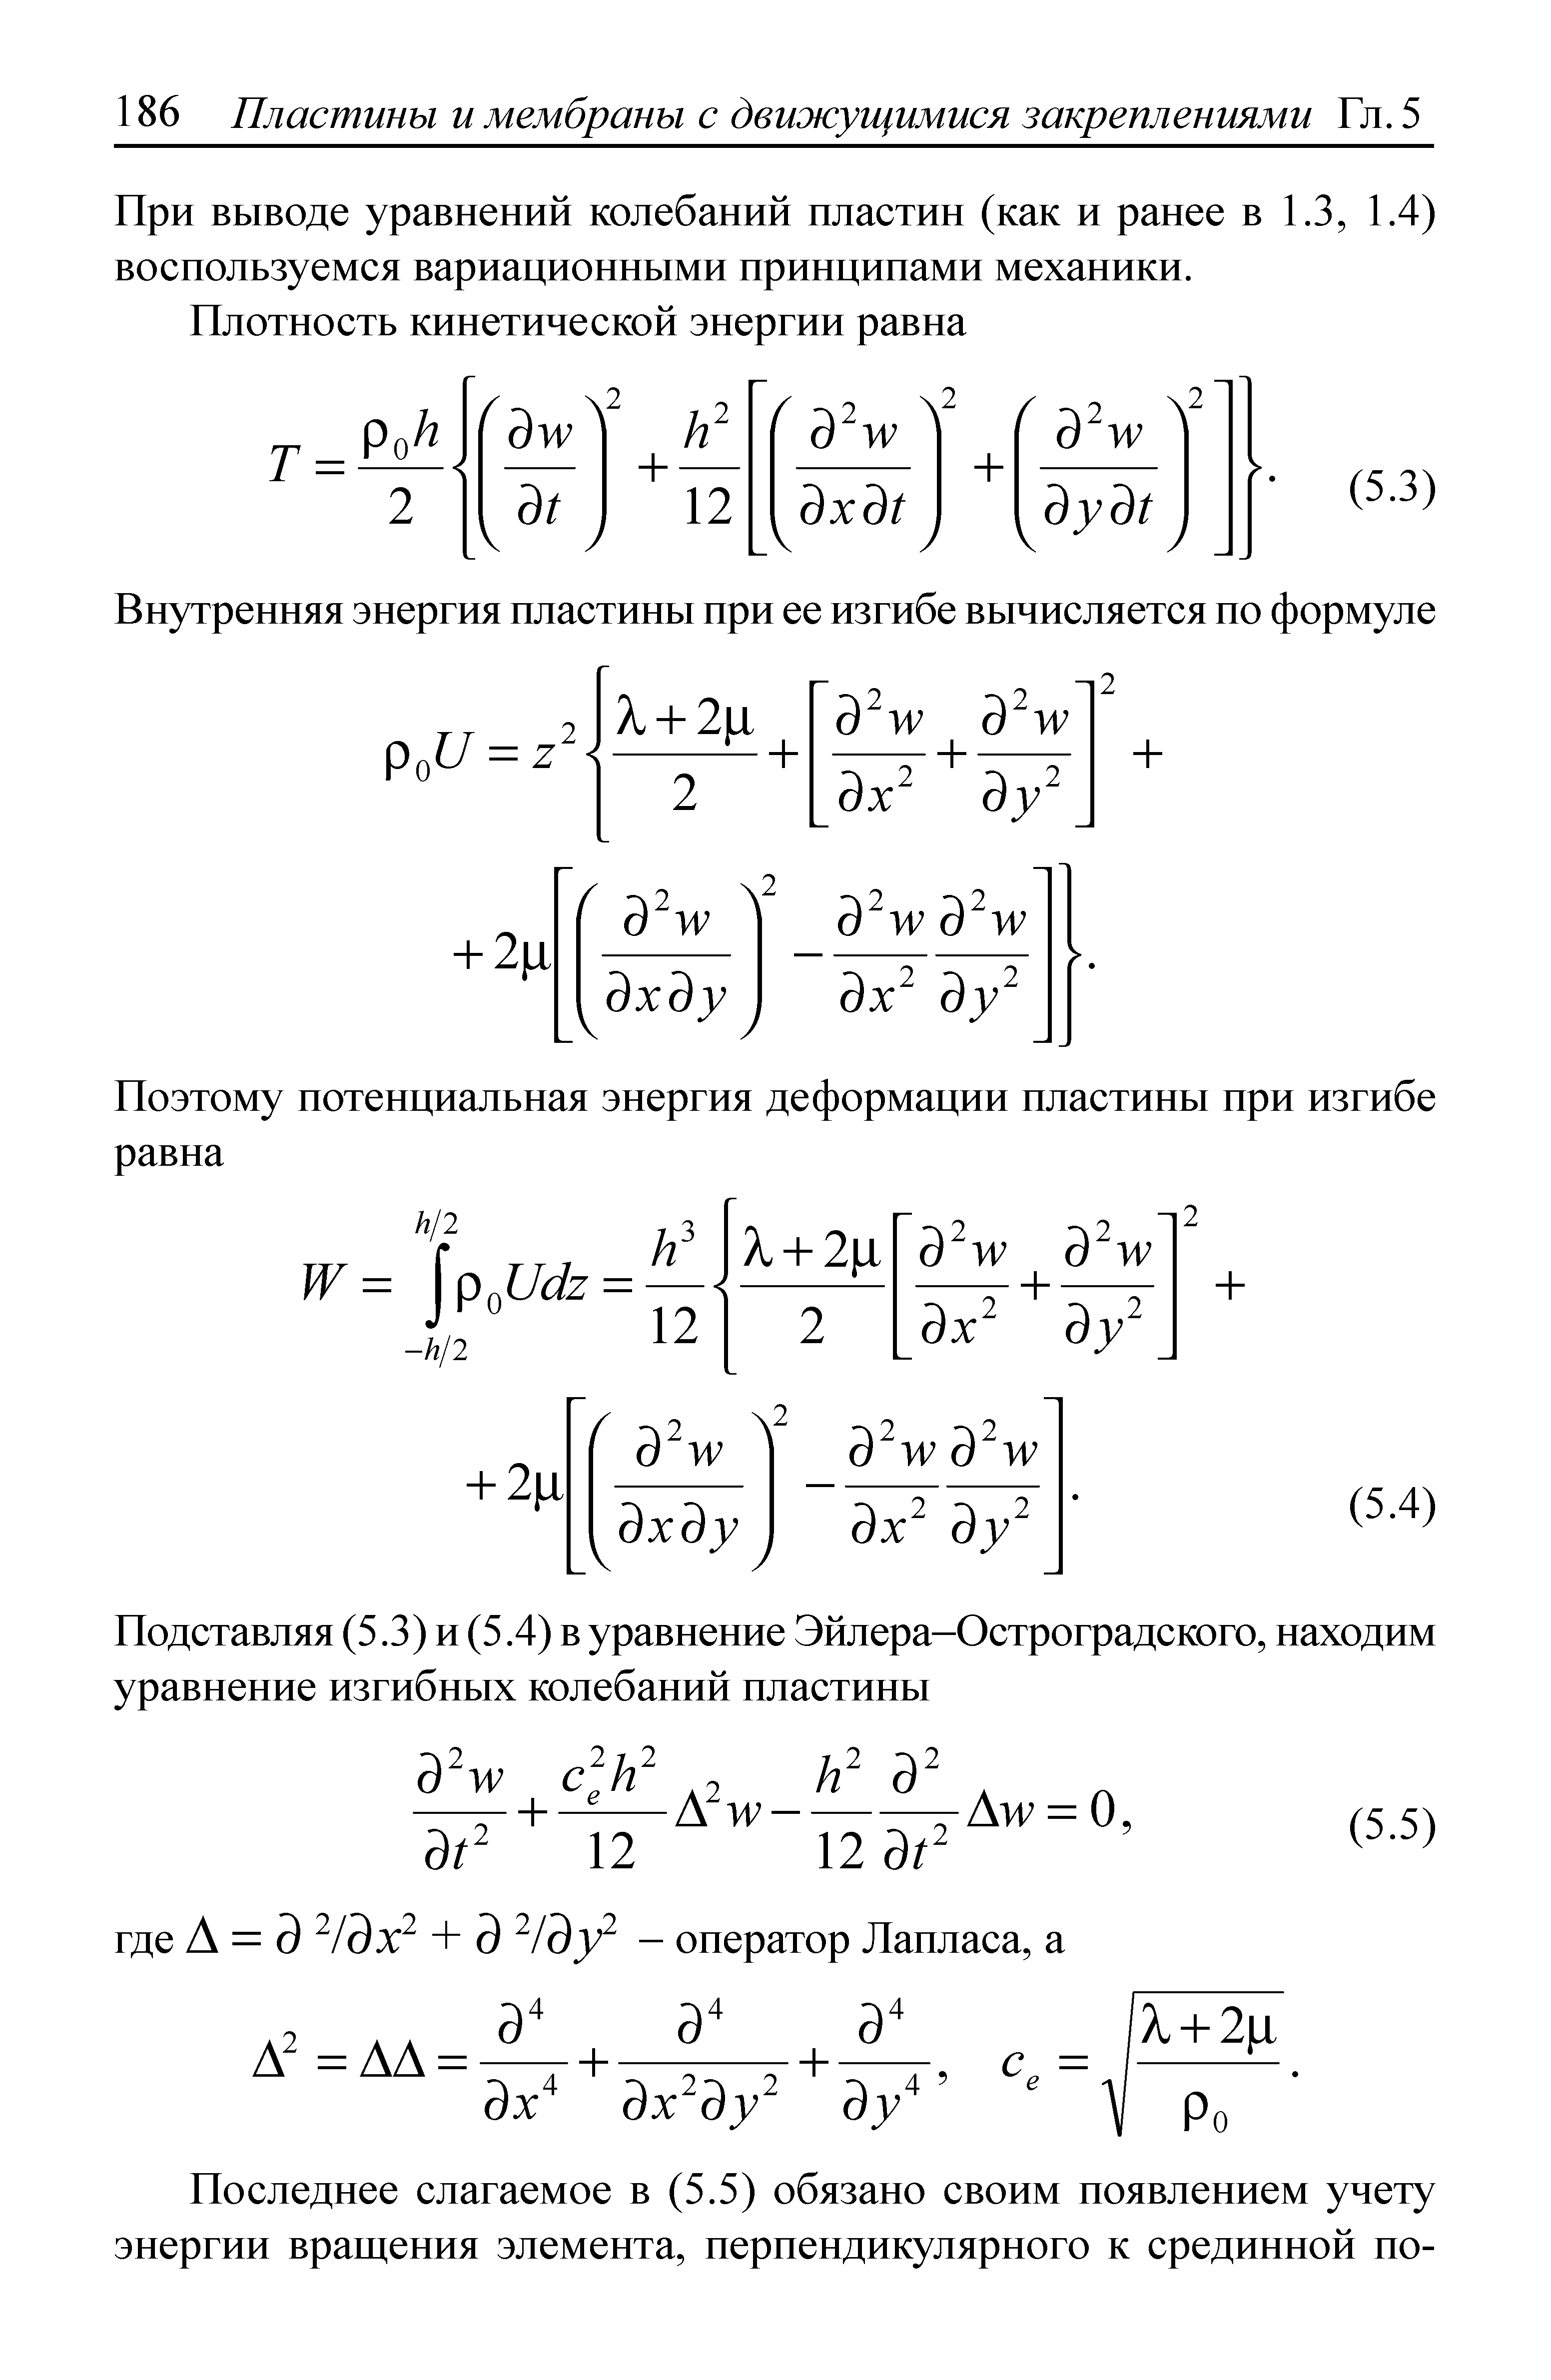 При выводе уравнений колебаний пластин (как и ранее в 1.3, 1.4) воспользуемся вариационными принципами механики.
